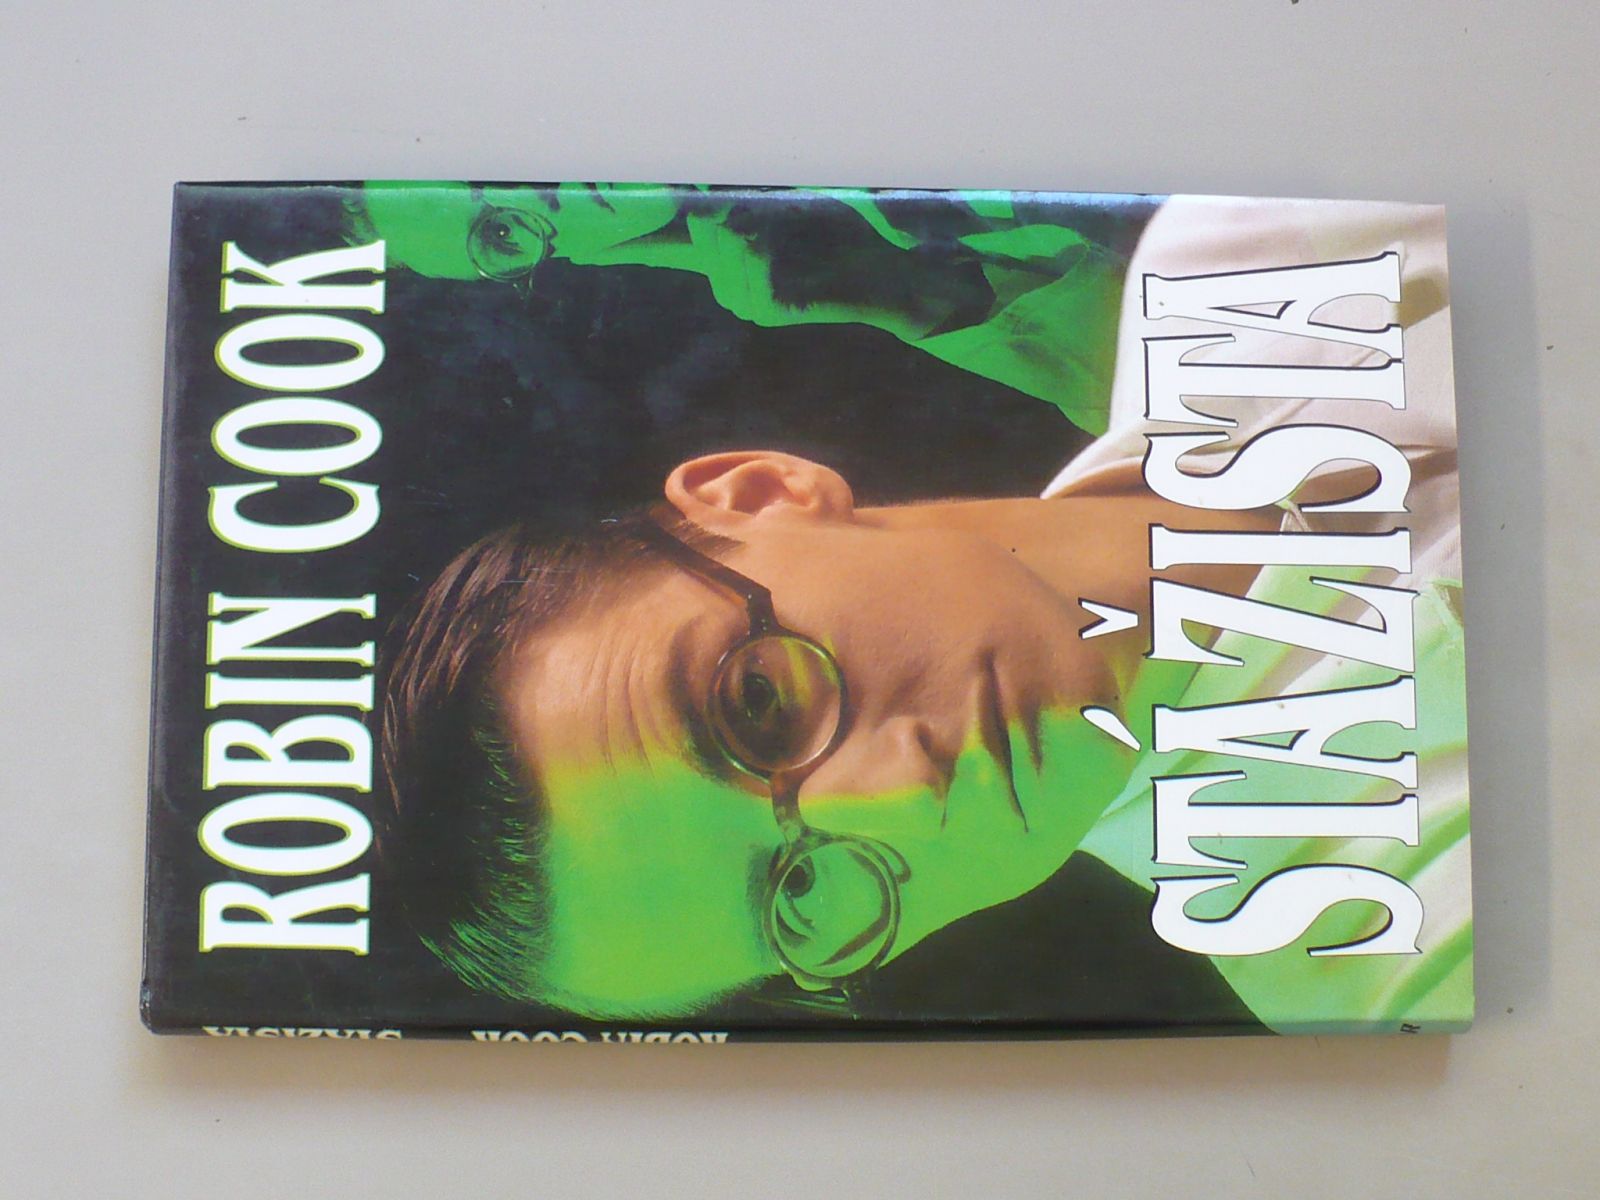 Robin Cook - Stážista (1995)